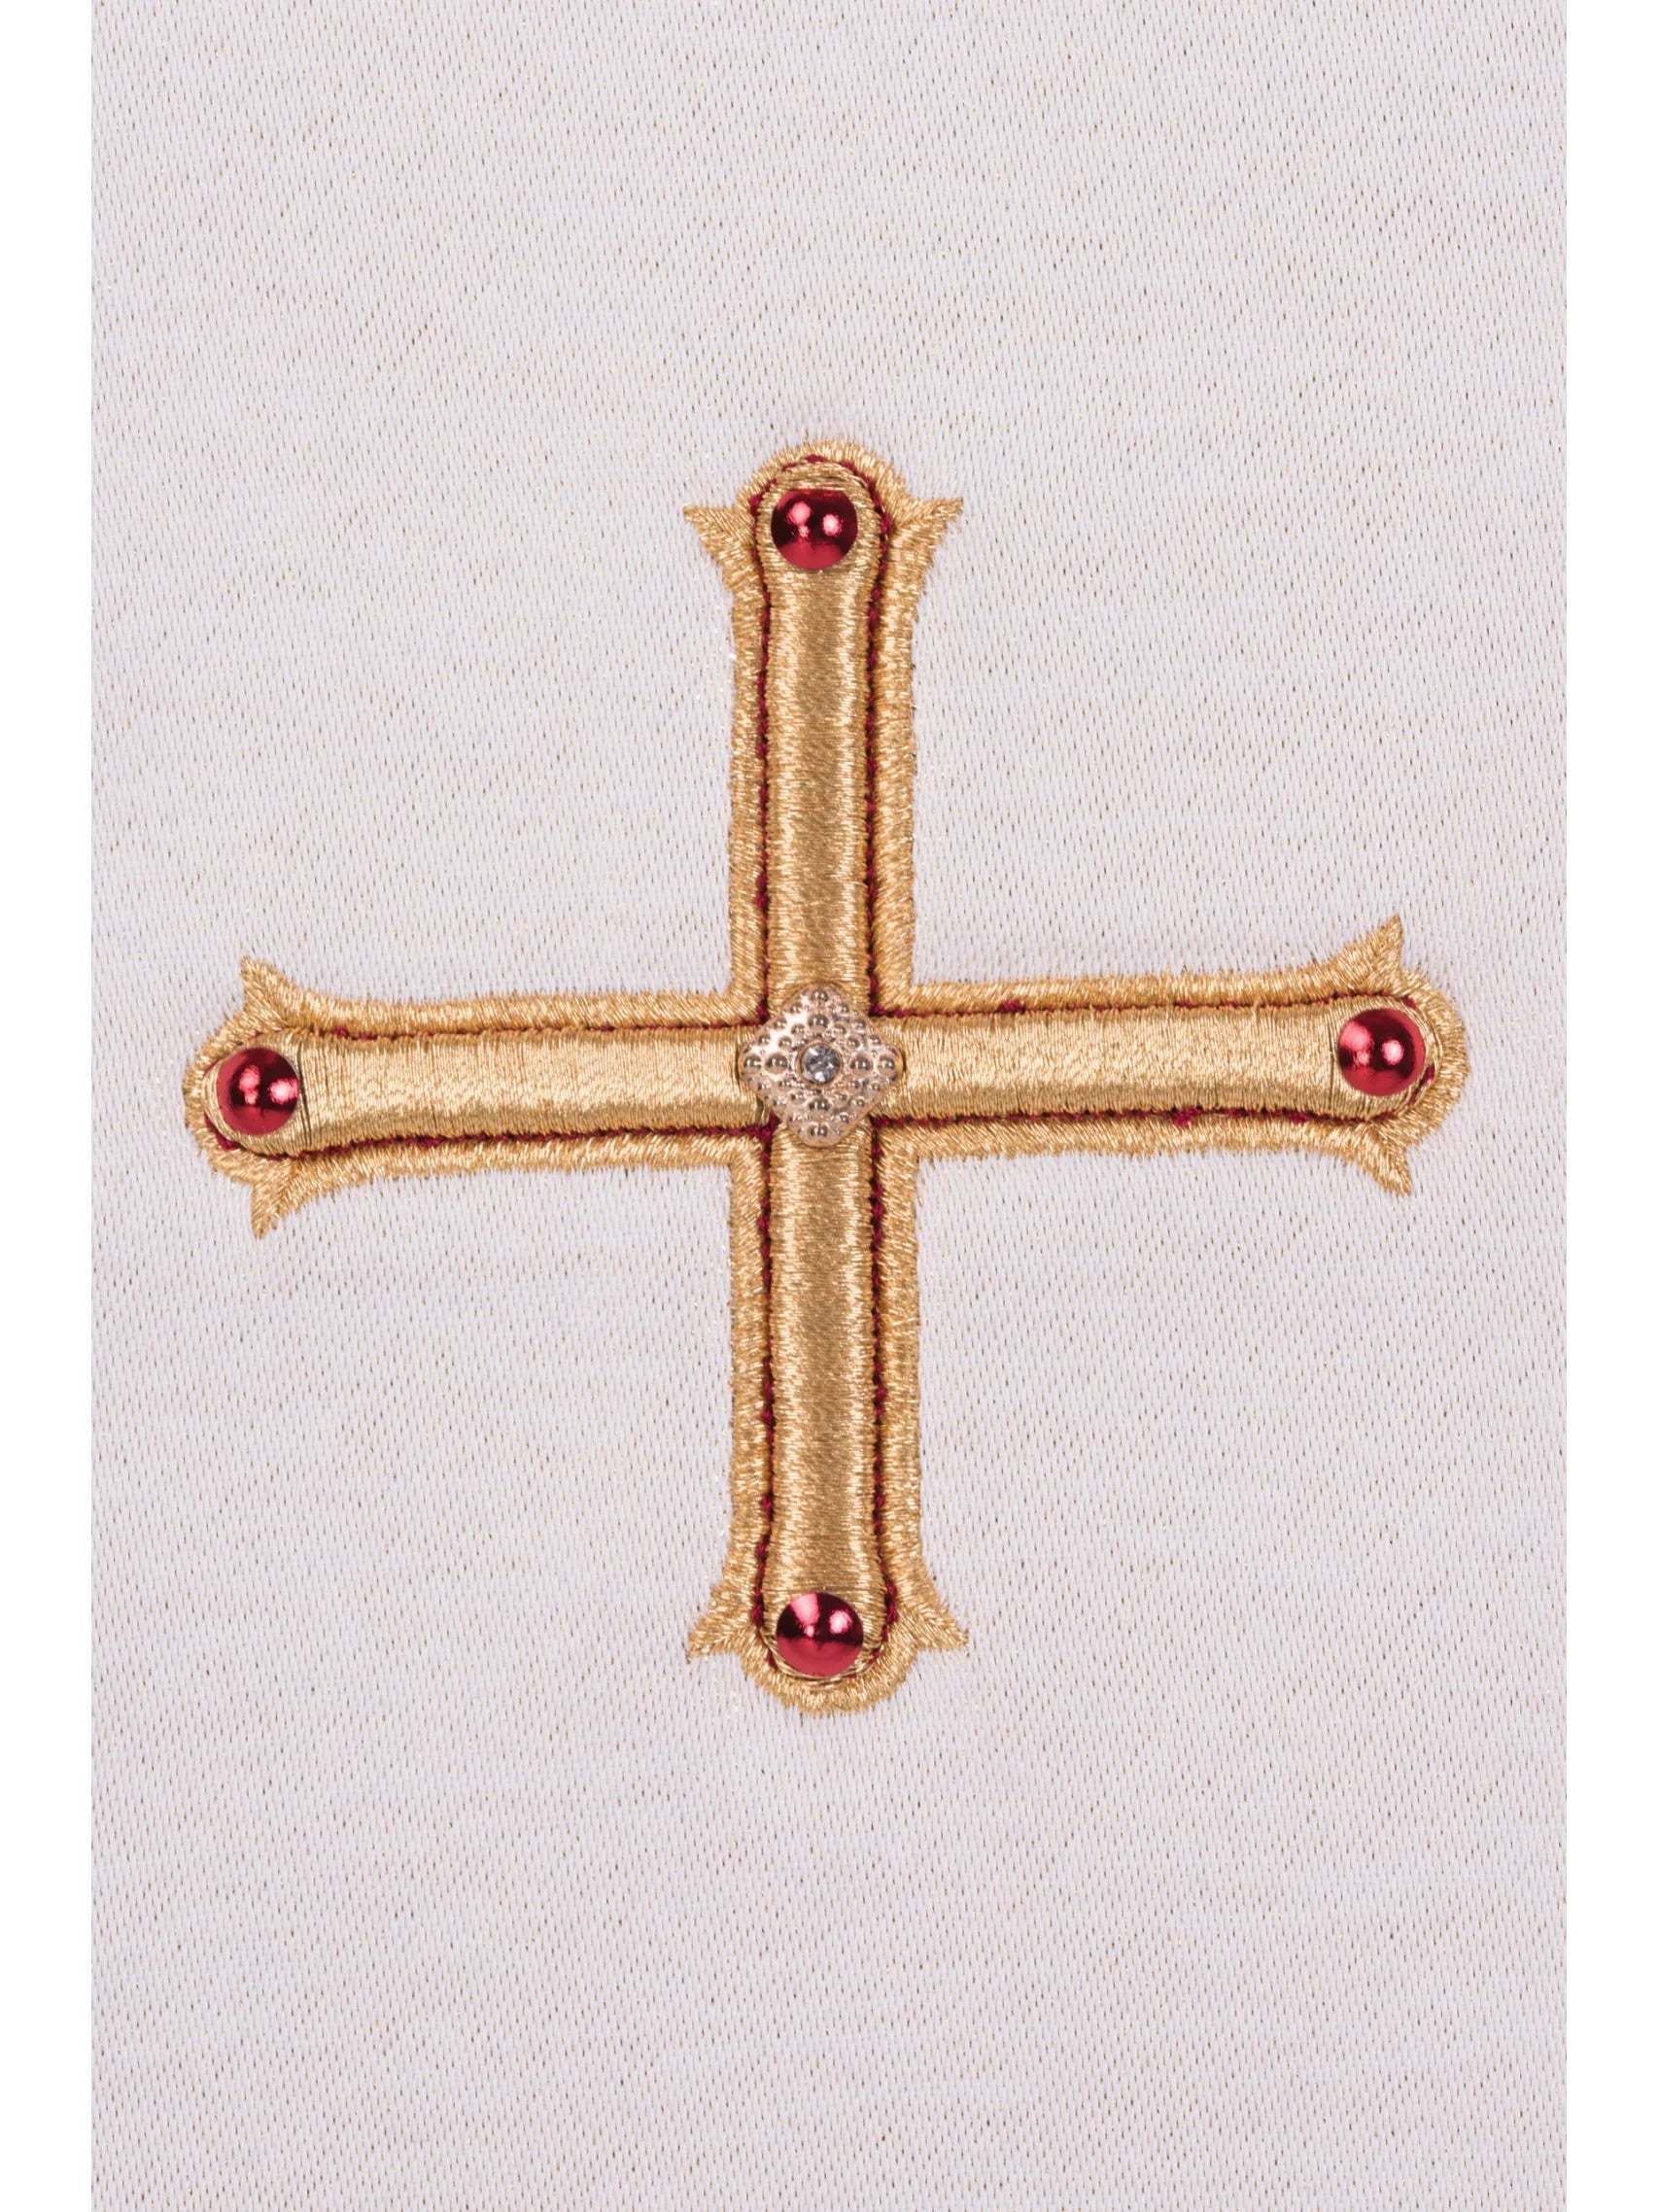 Stuła diakońska haftowana z Krzyżem LE/2210